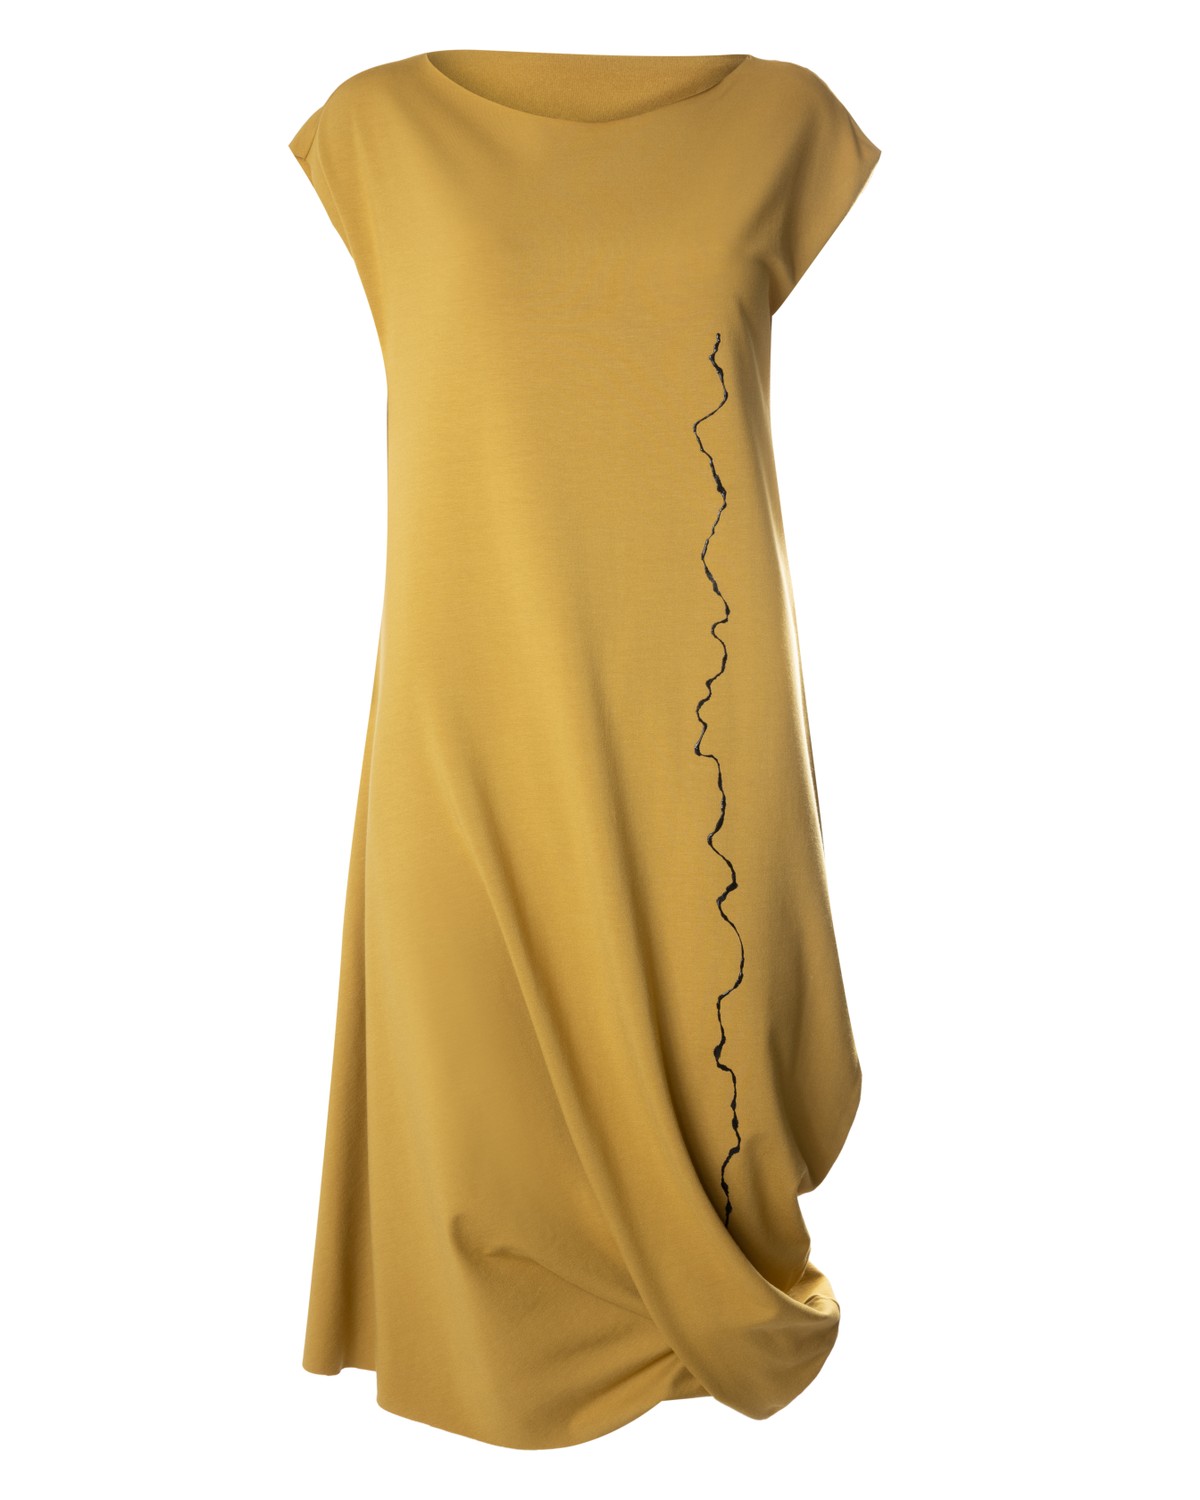 vestido em moletom com detalhe artesanal | asymmetric dress with artisanal detail